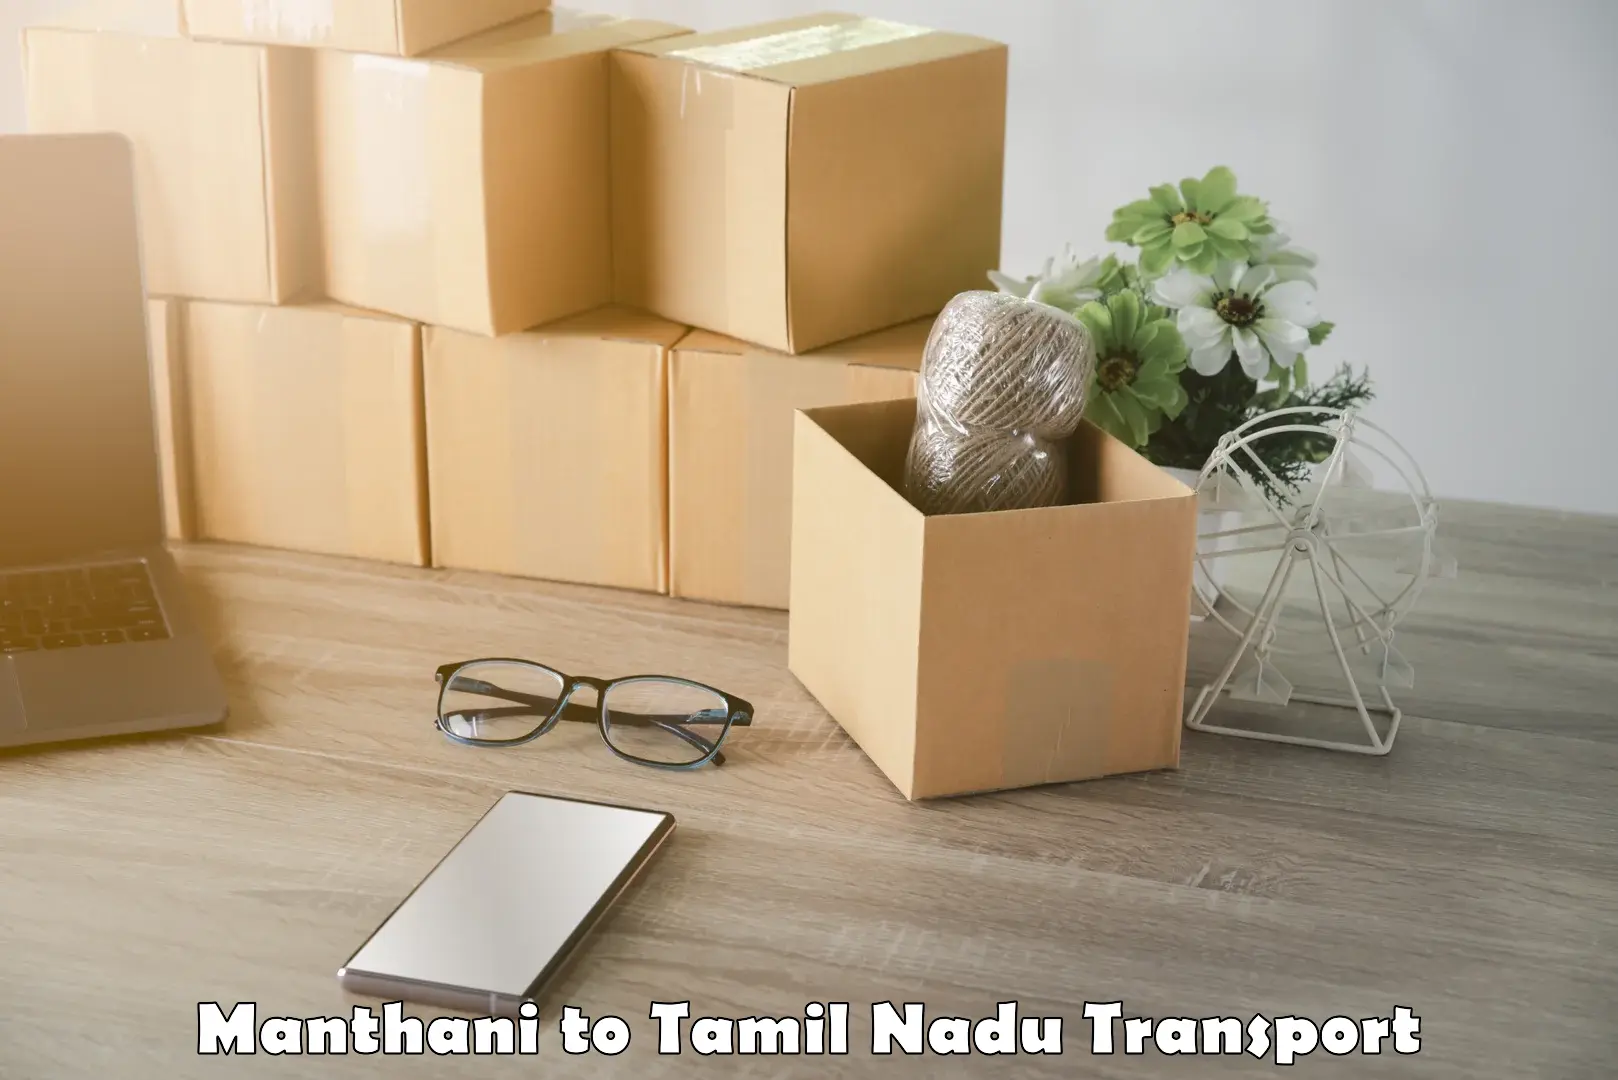 Door to door transport services Manthani to Tamil Nadu